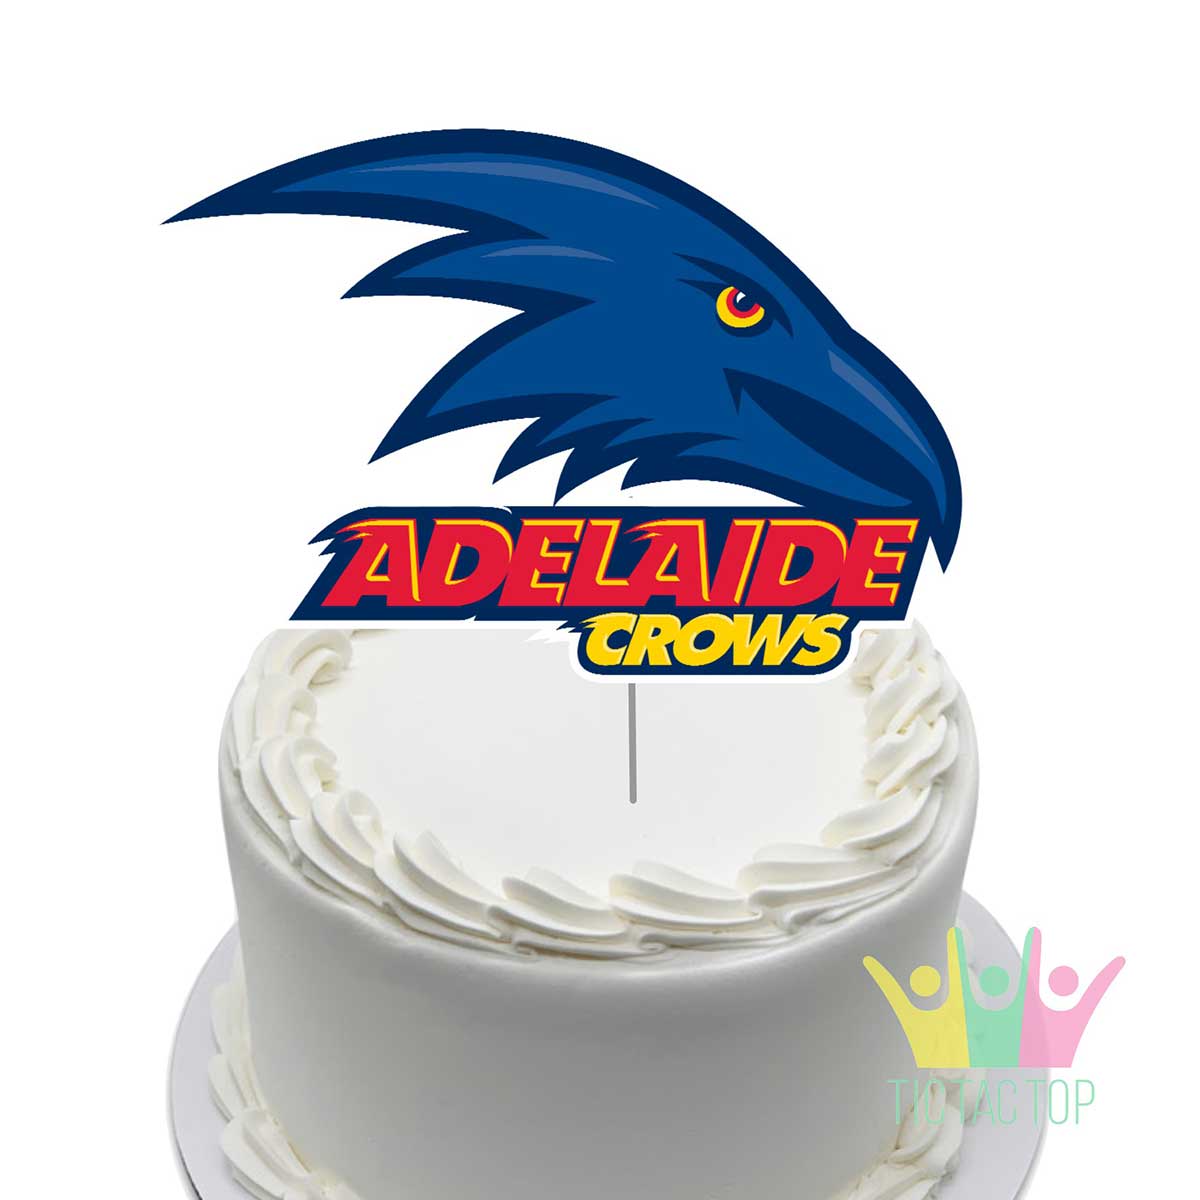 Freemantle Dockers AFL Cake - Decorated Cake by Custom - CakesDecor